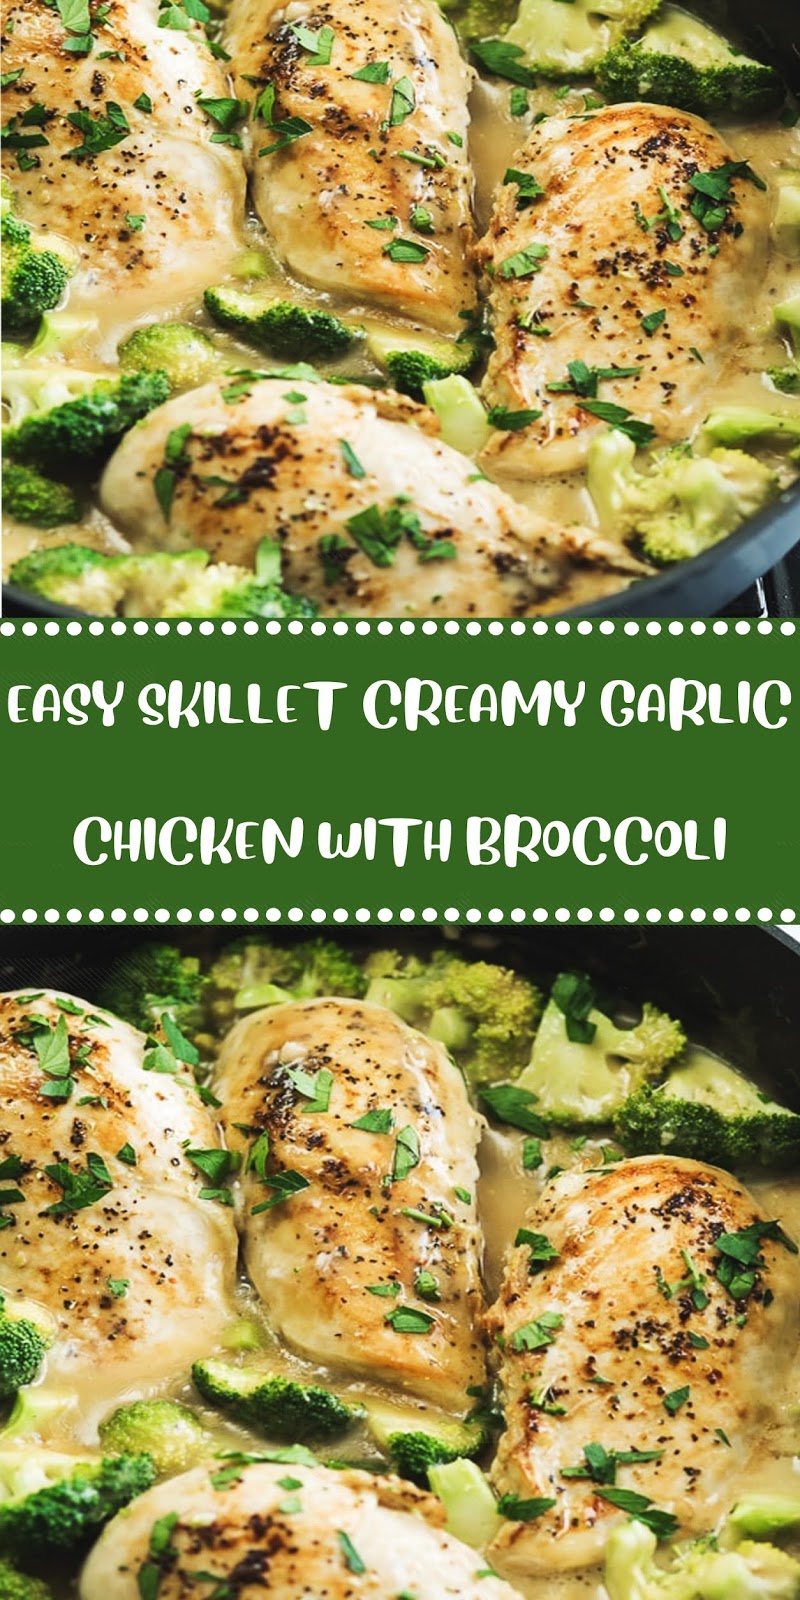 Easy Skillet Creamy Garlic Chicken With Broccoli